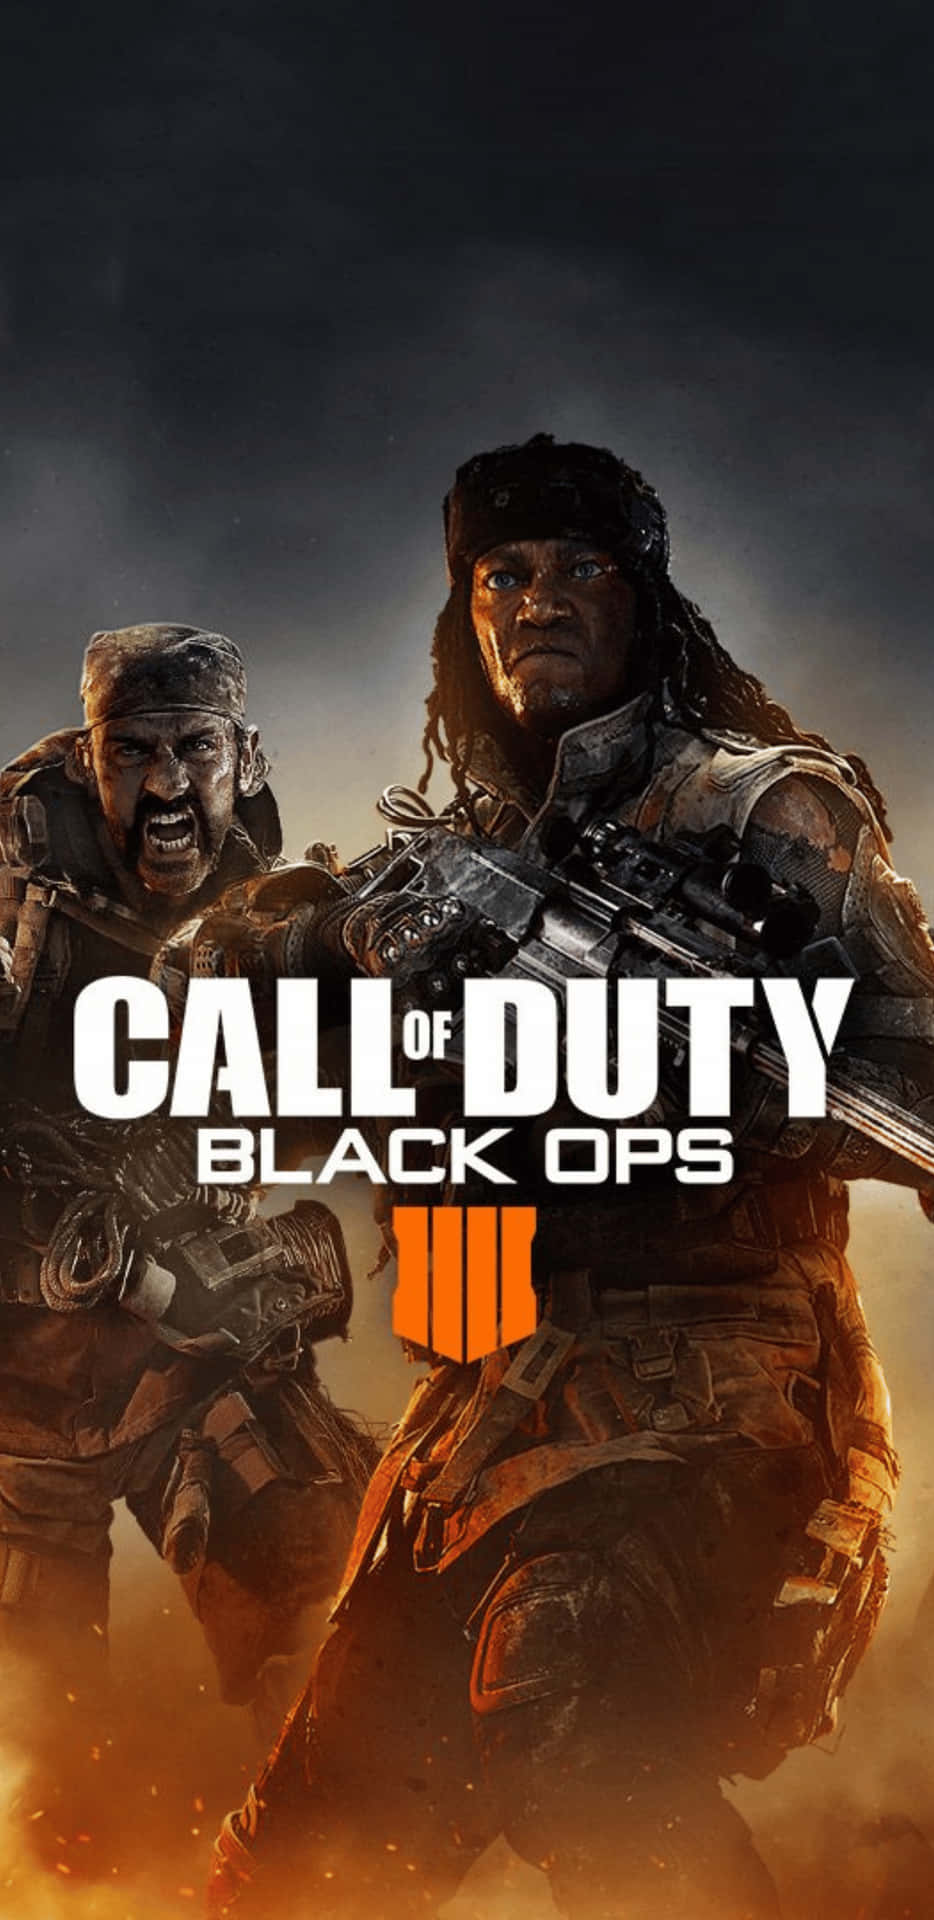 Denultimata Spelupplevelsen Presenterar Pixel 3xl Call Of Duty Black Ops 4 Som Dator- Eller Mobilbakgrund.